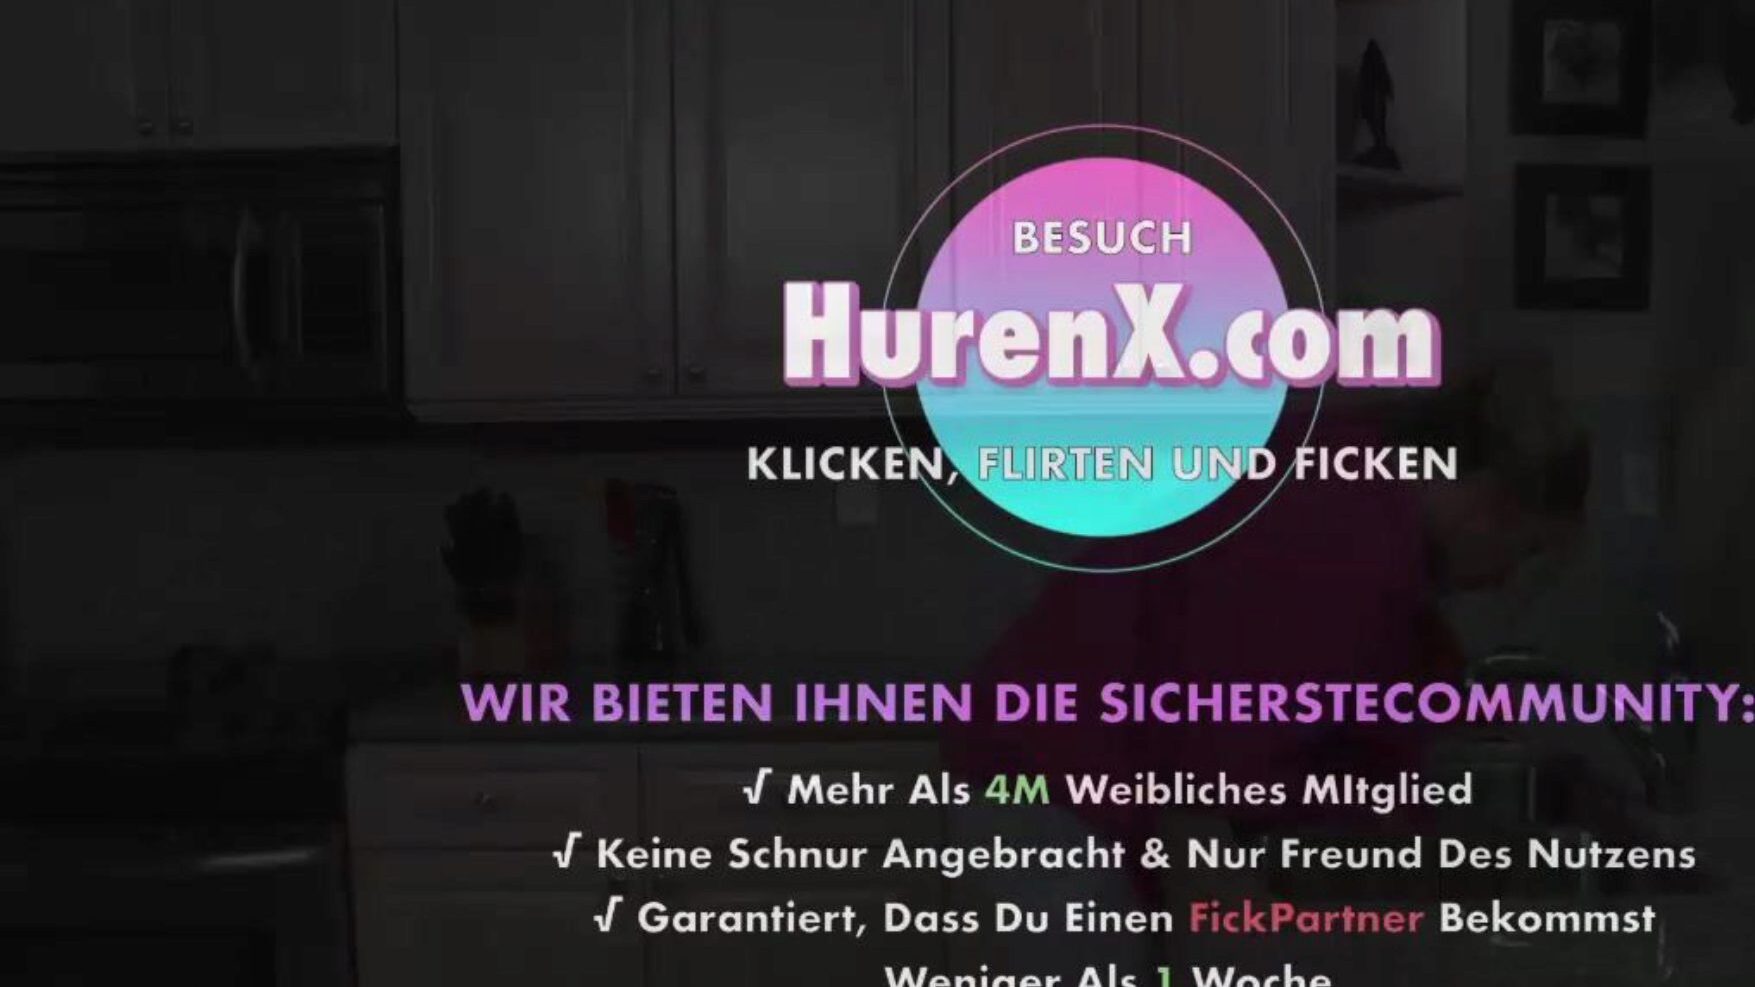 stiefmutter will meine hilfe, free xnxc porn b5: xhamster Watch Το stiefmutter will me hilfe film σκηνή στο xhamster, ο μεγαλύτερος ιστότοπος hd fuck-fest tube με τόνους δωρεάν γερμανικών xnxc & μουρμουρίζοντας κλιπ γερμανικής πορνογραφίας